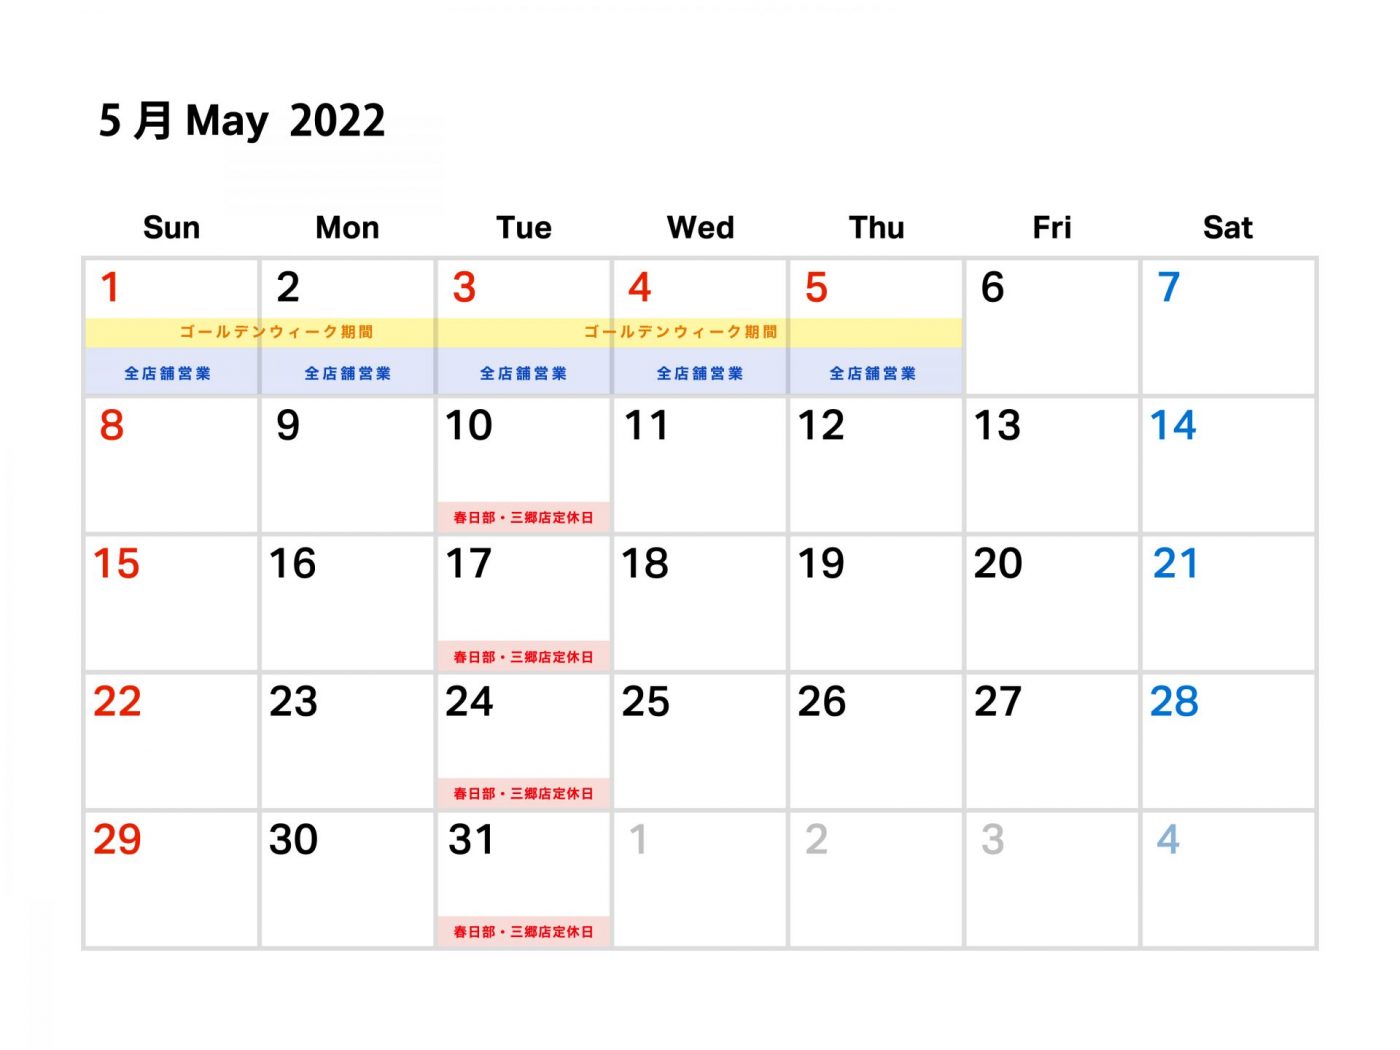 2022.04.27
【重要】ゴールデンウィーク期間中の営業時間のお知らせ